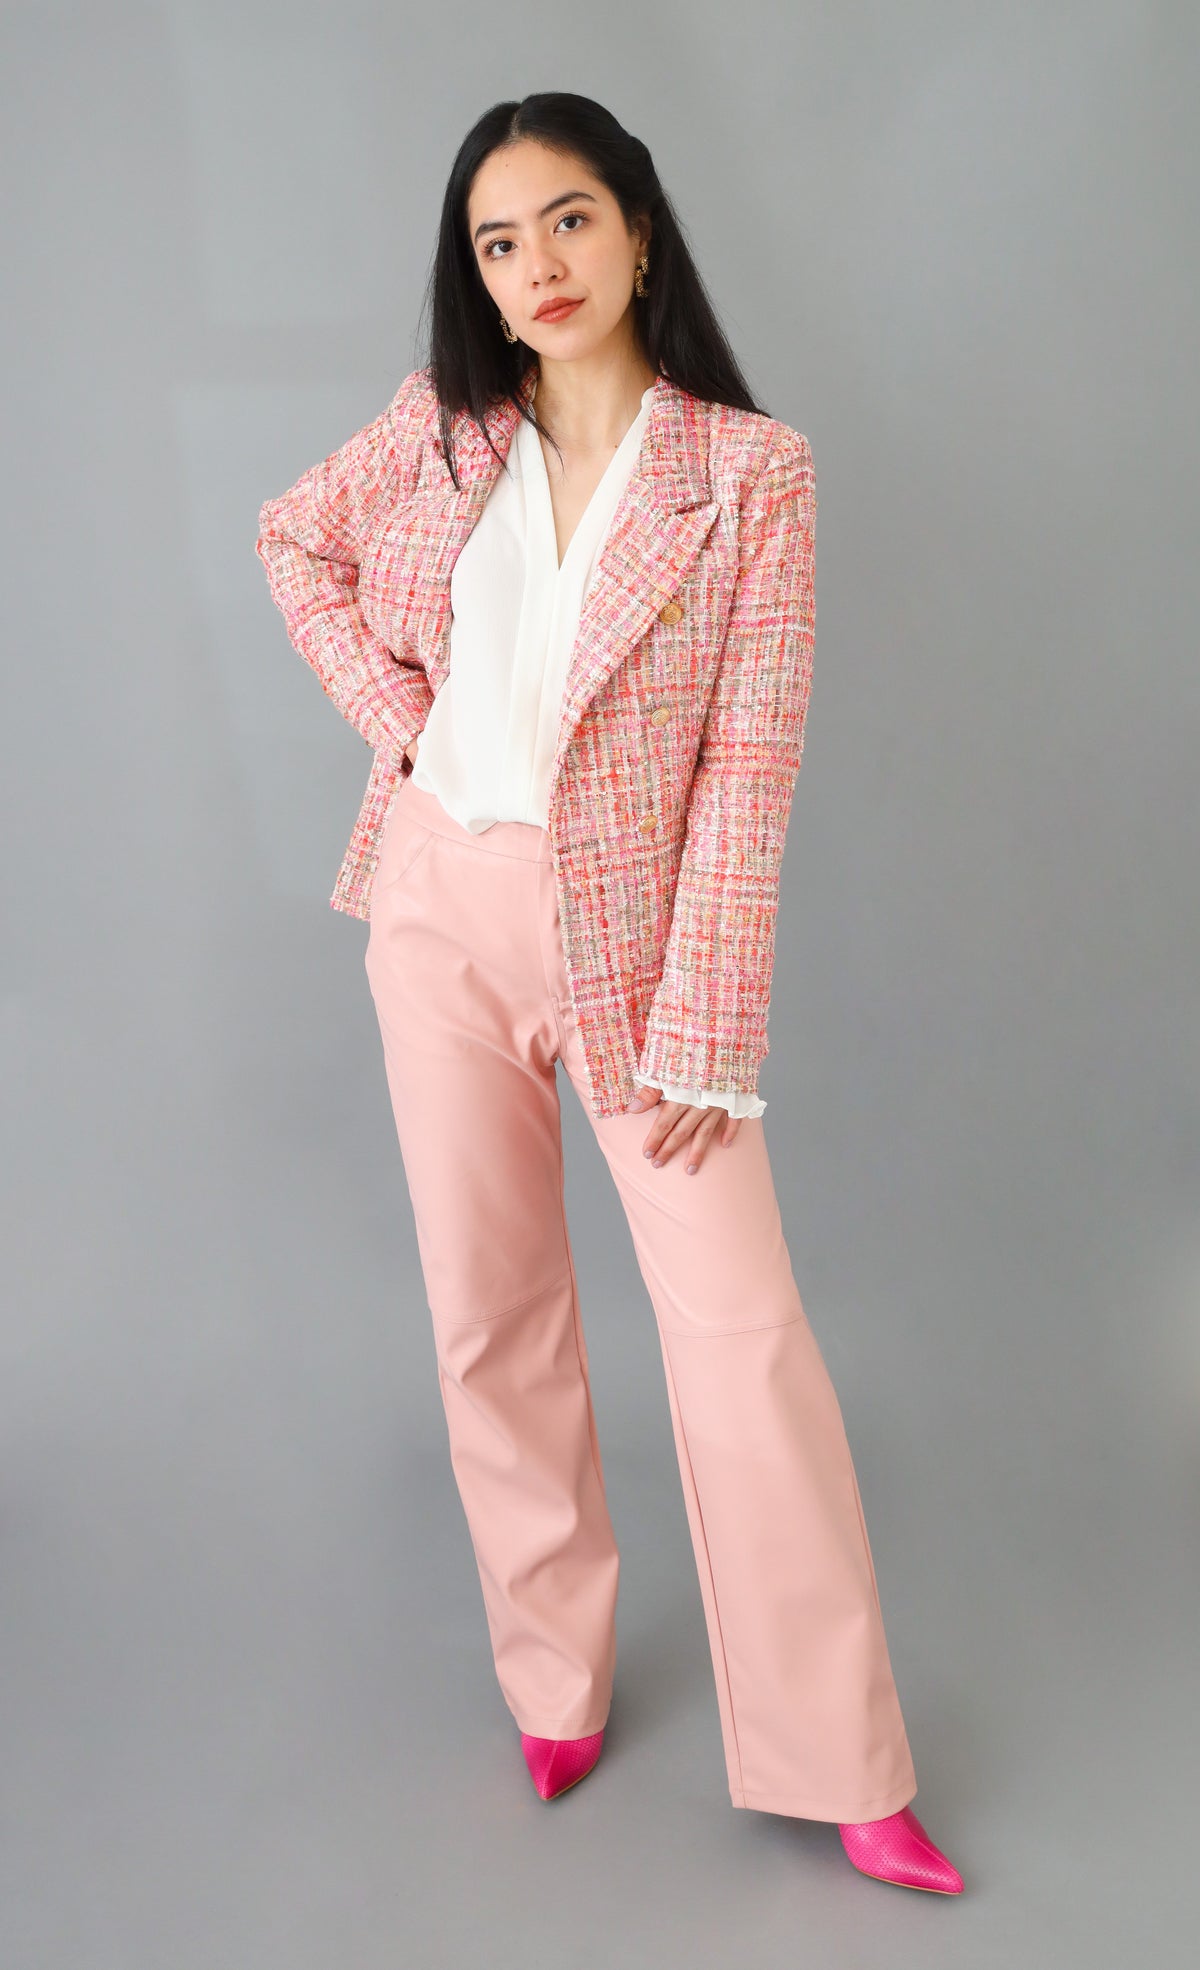 Simply Sophisticated Pink Tweed Blazer